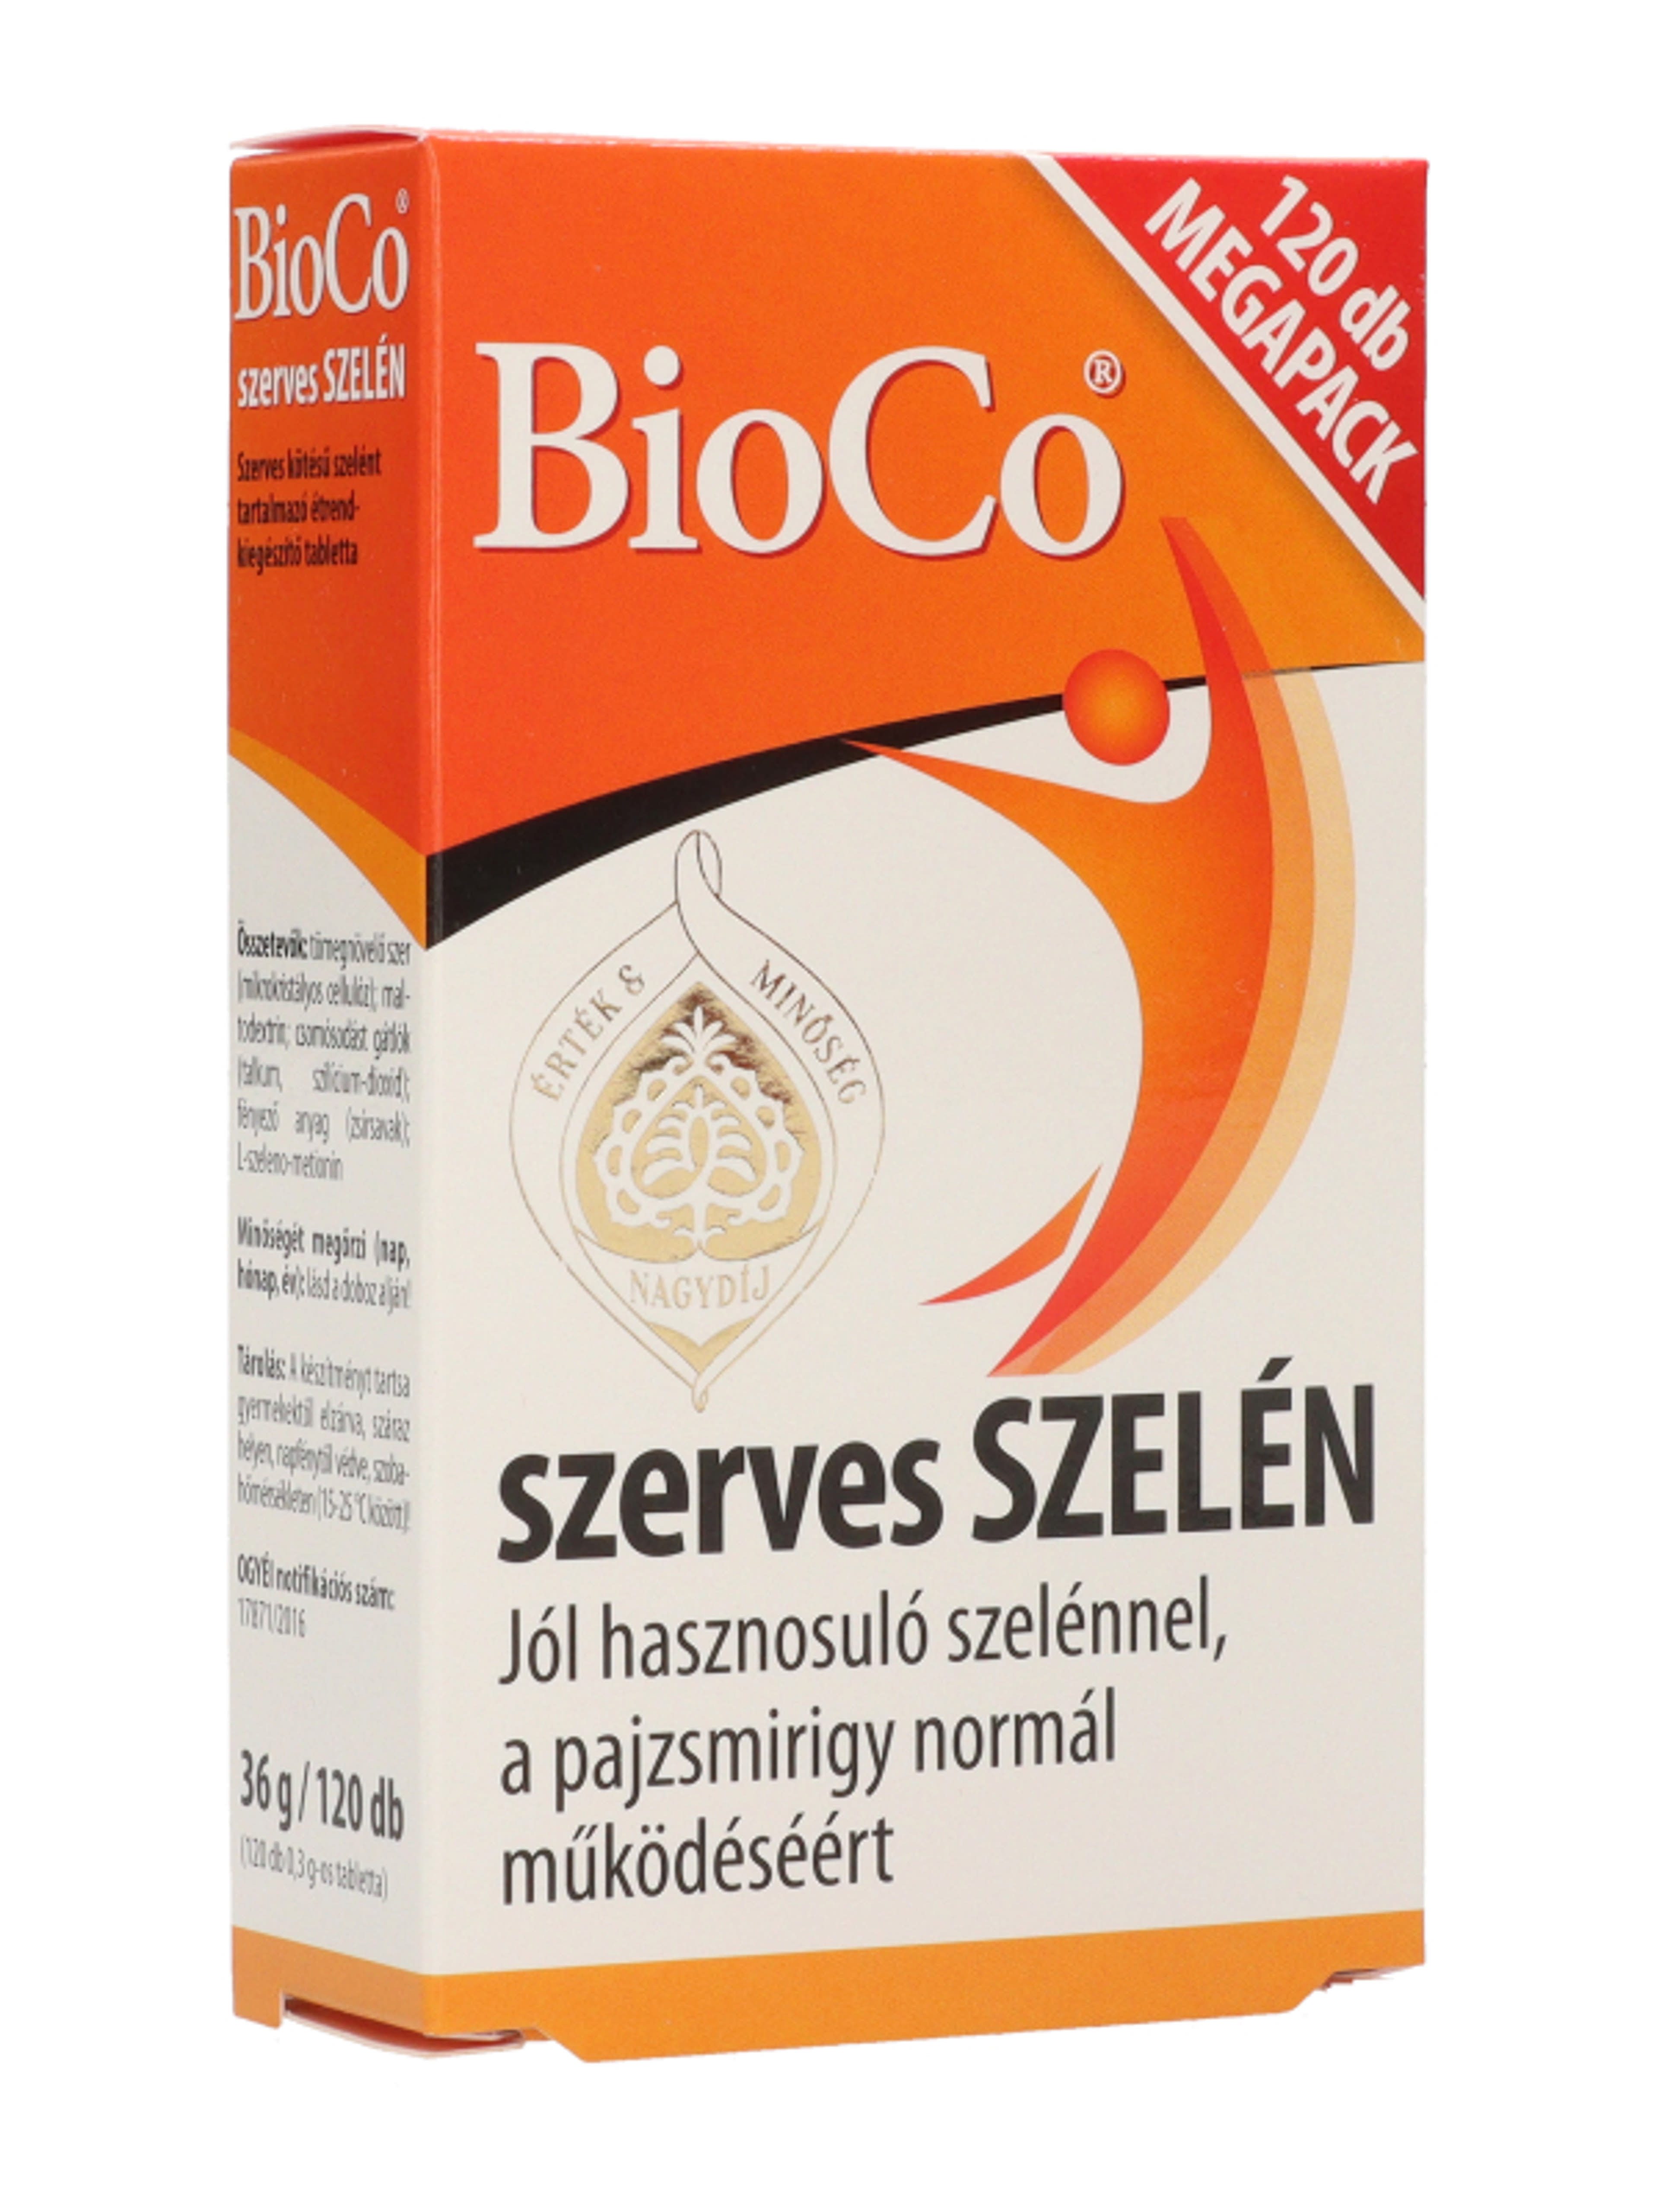 Bioco szerves szelén megapack tabletta - 120 db-7